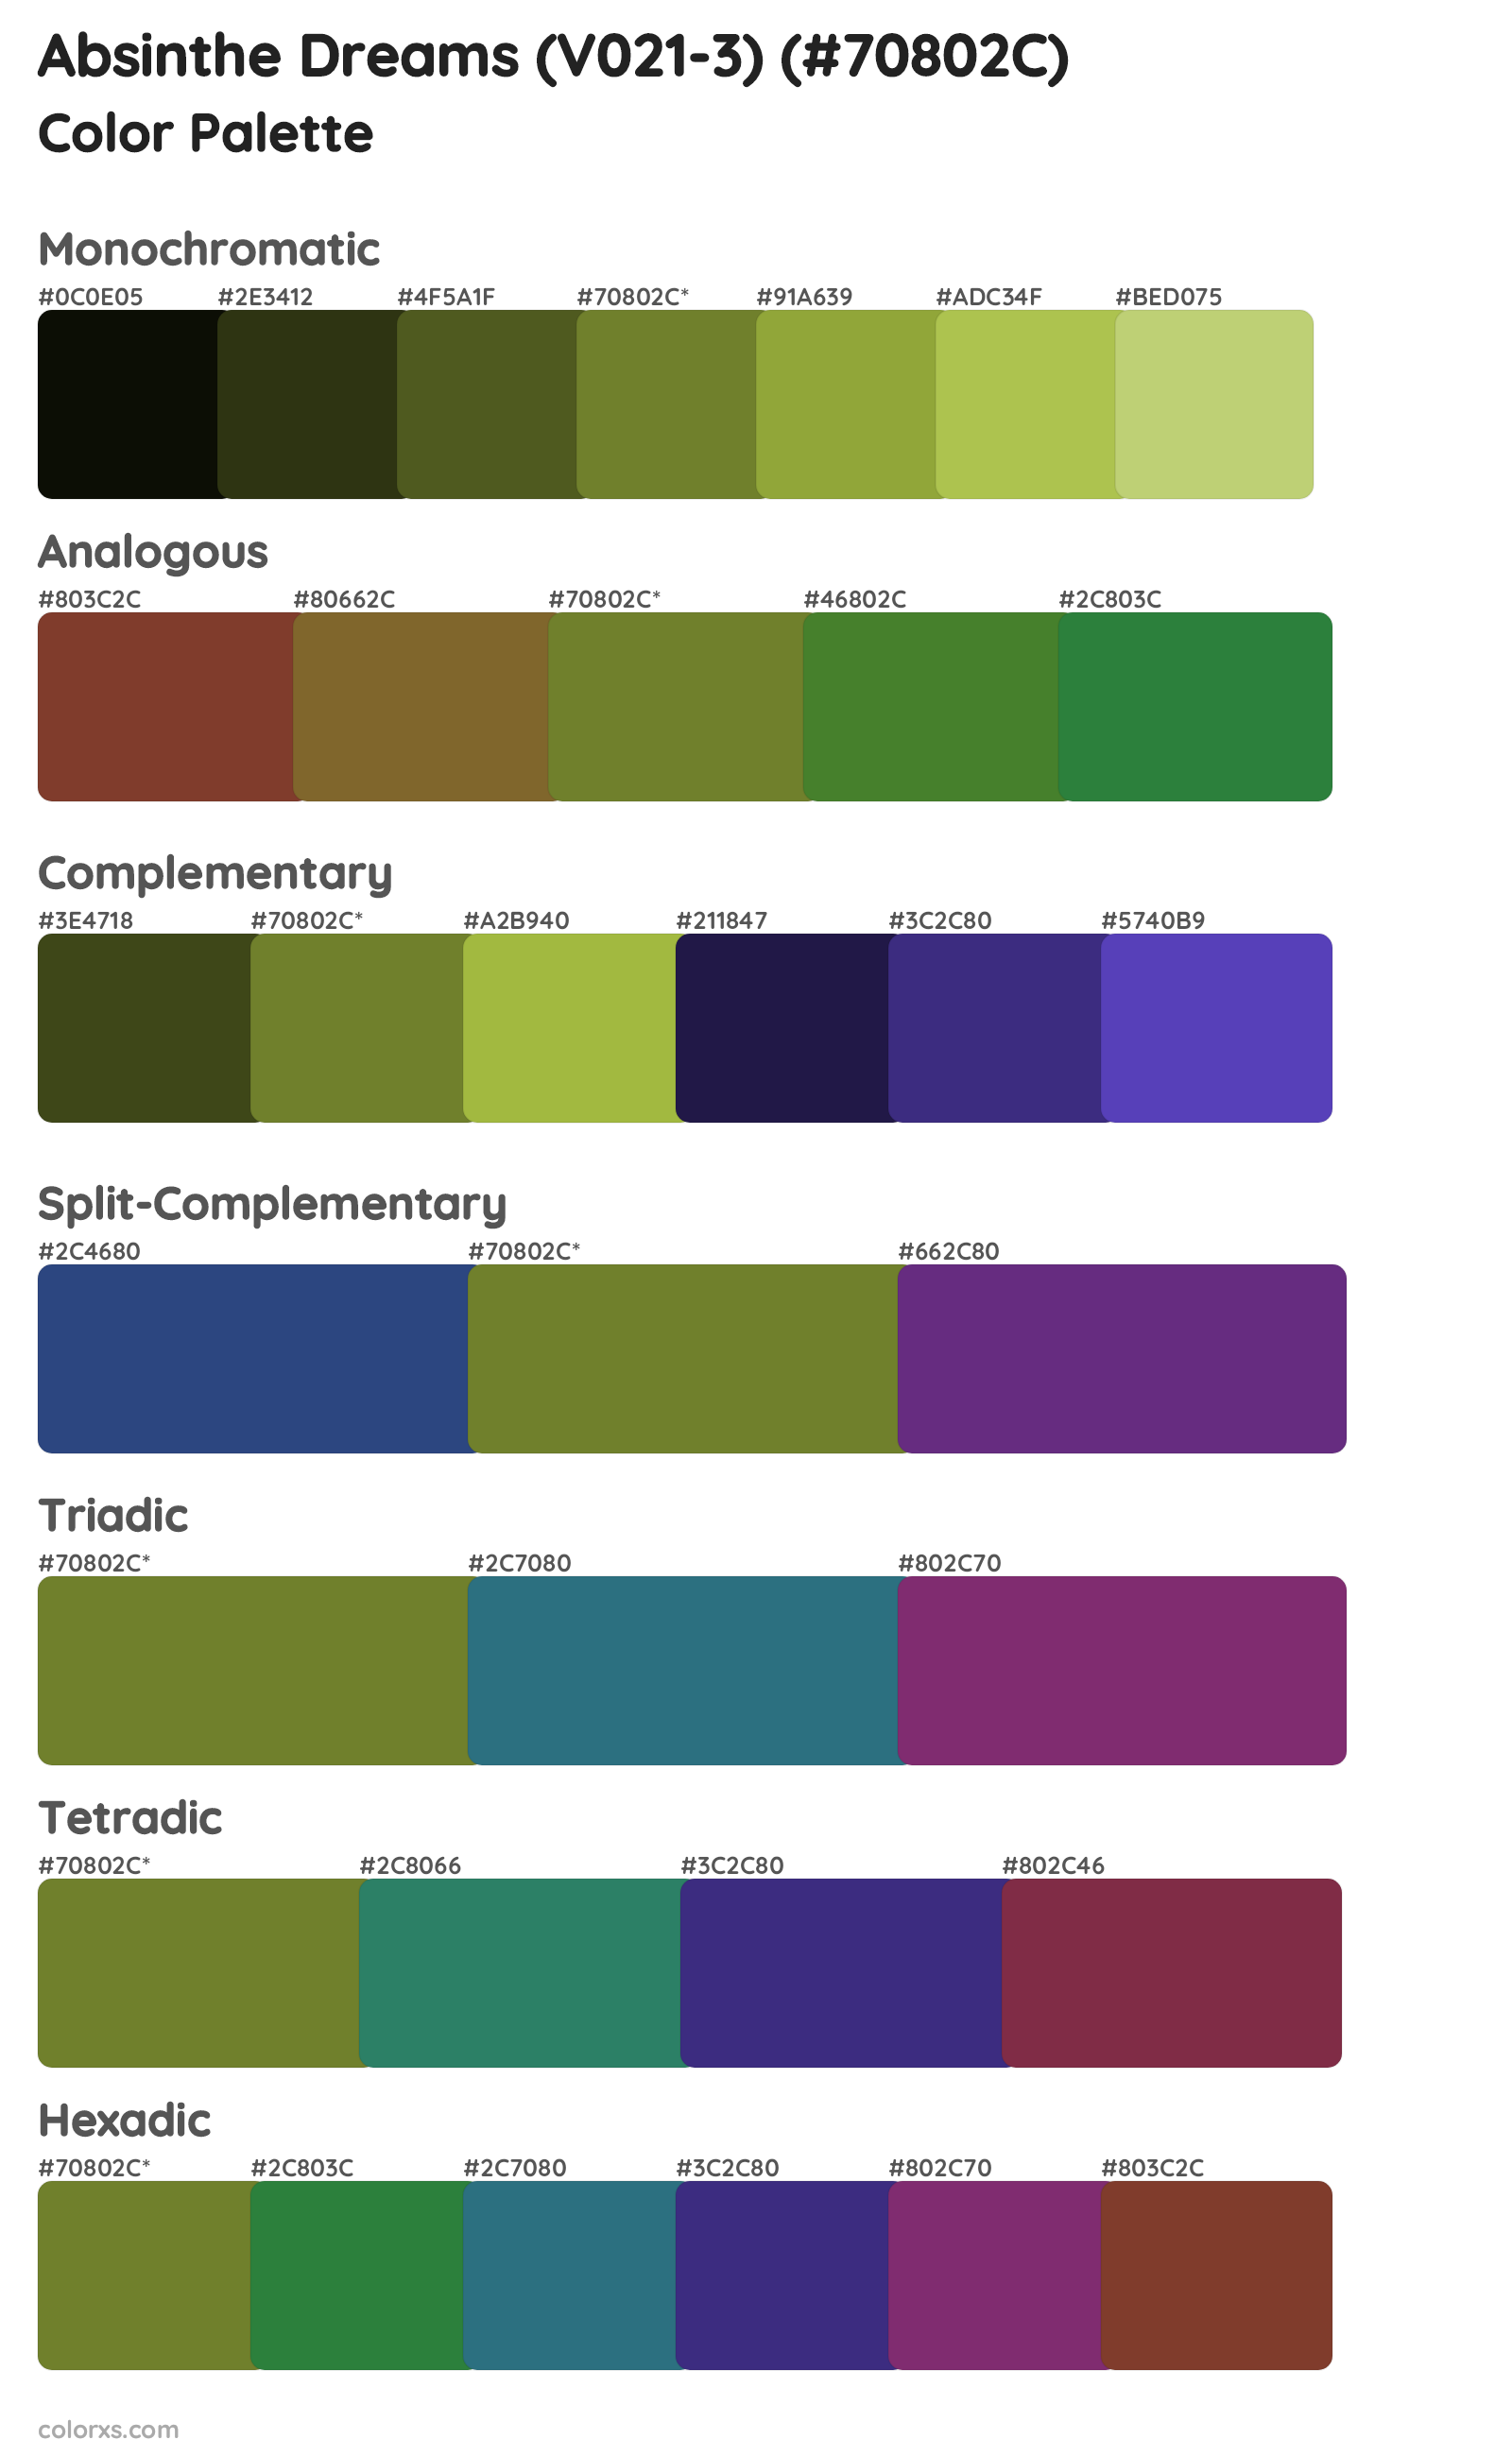 Absinthe Dreams (V021-3) Color Scheme Palettes